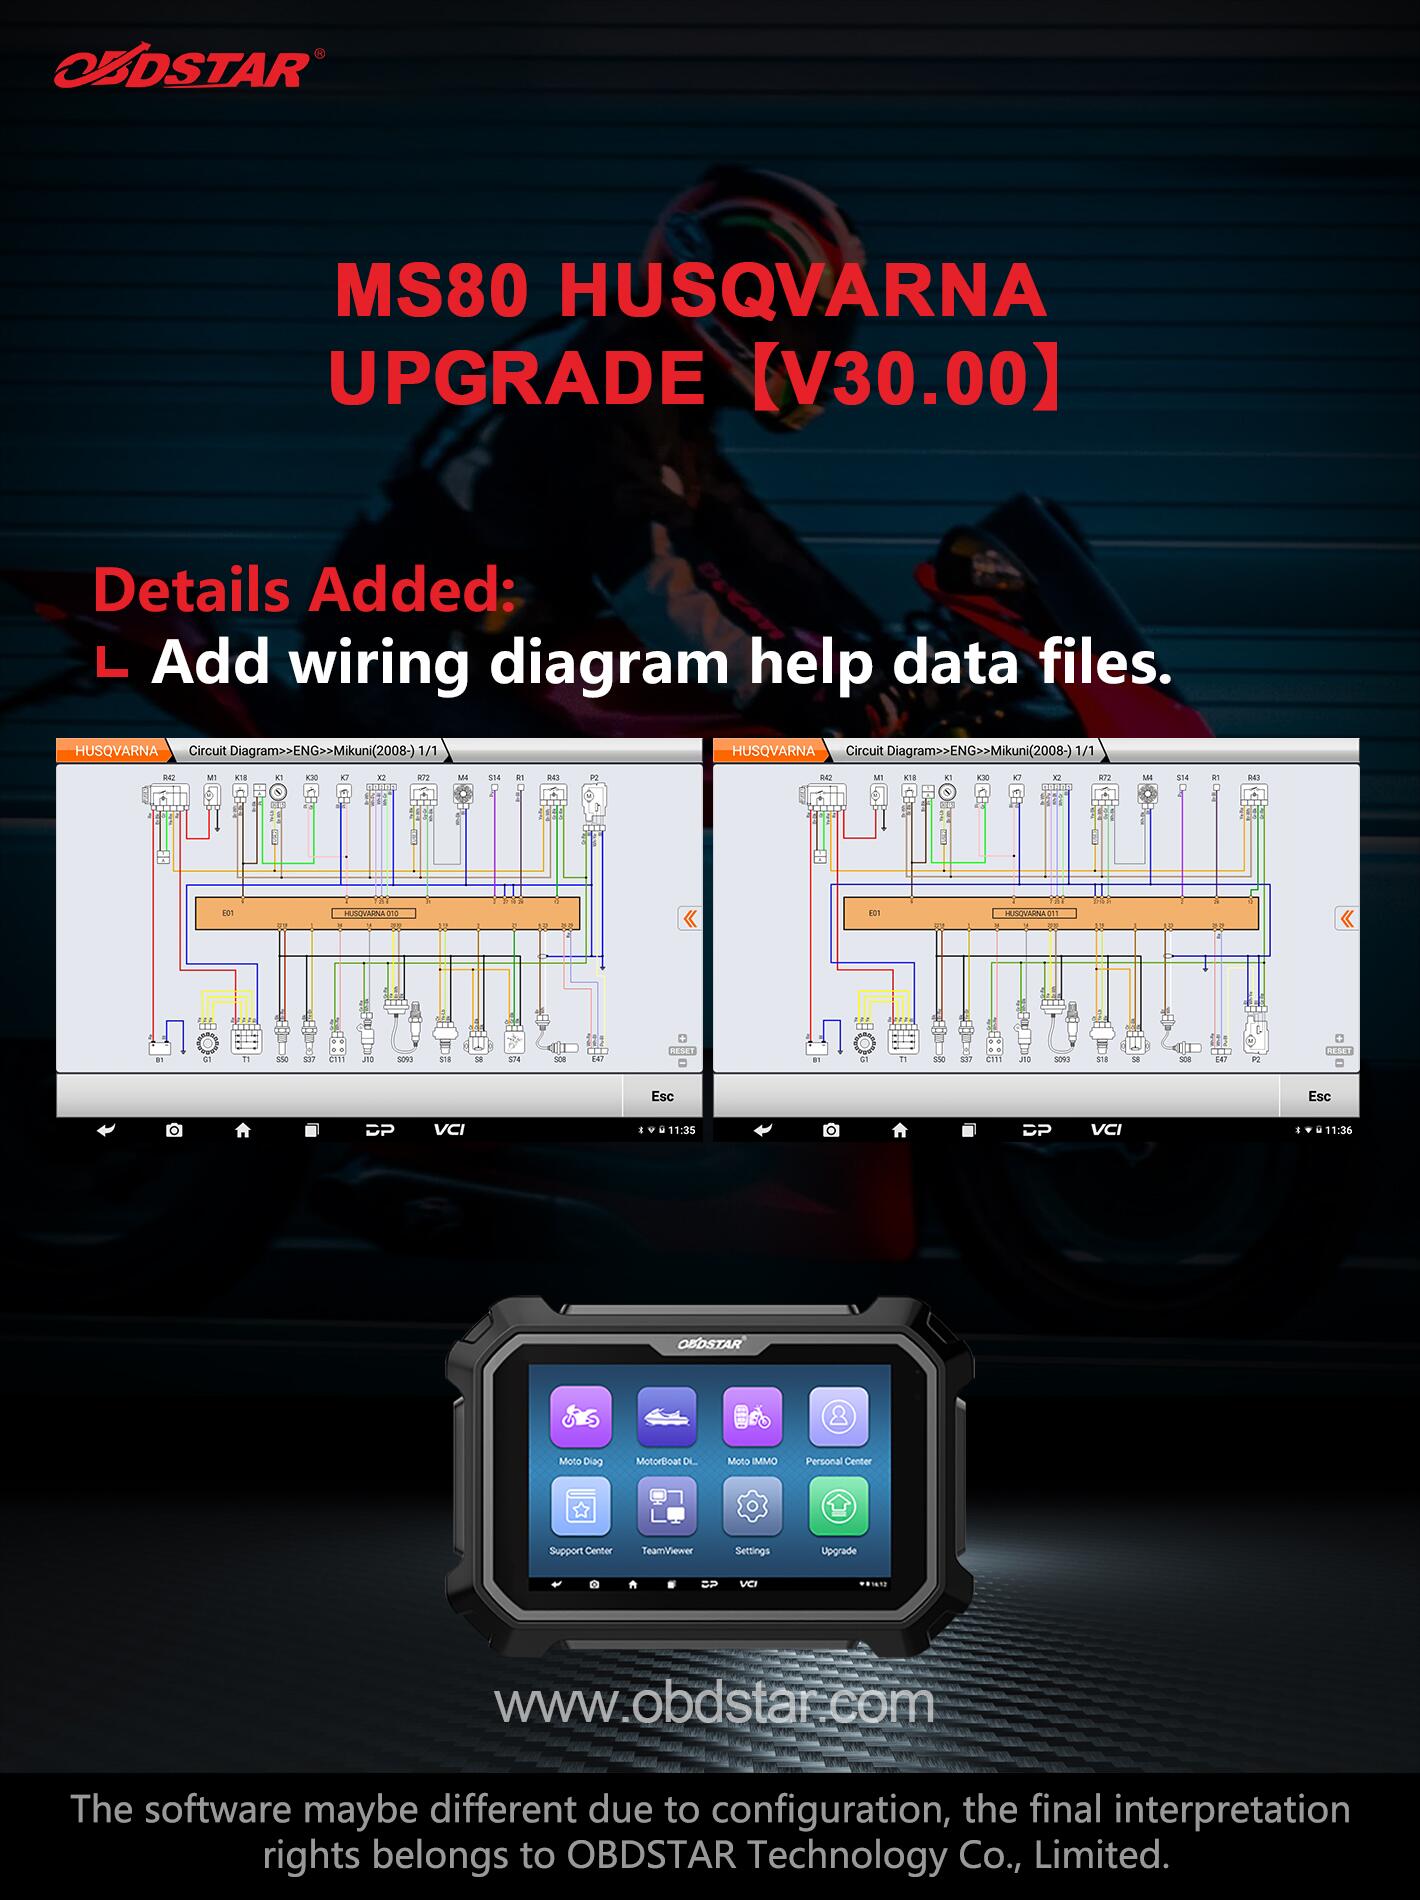 MS80 HUSQVARNA upgrade